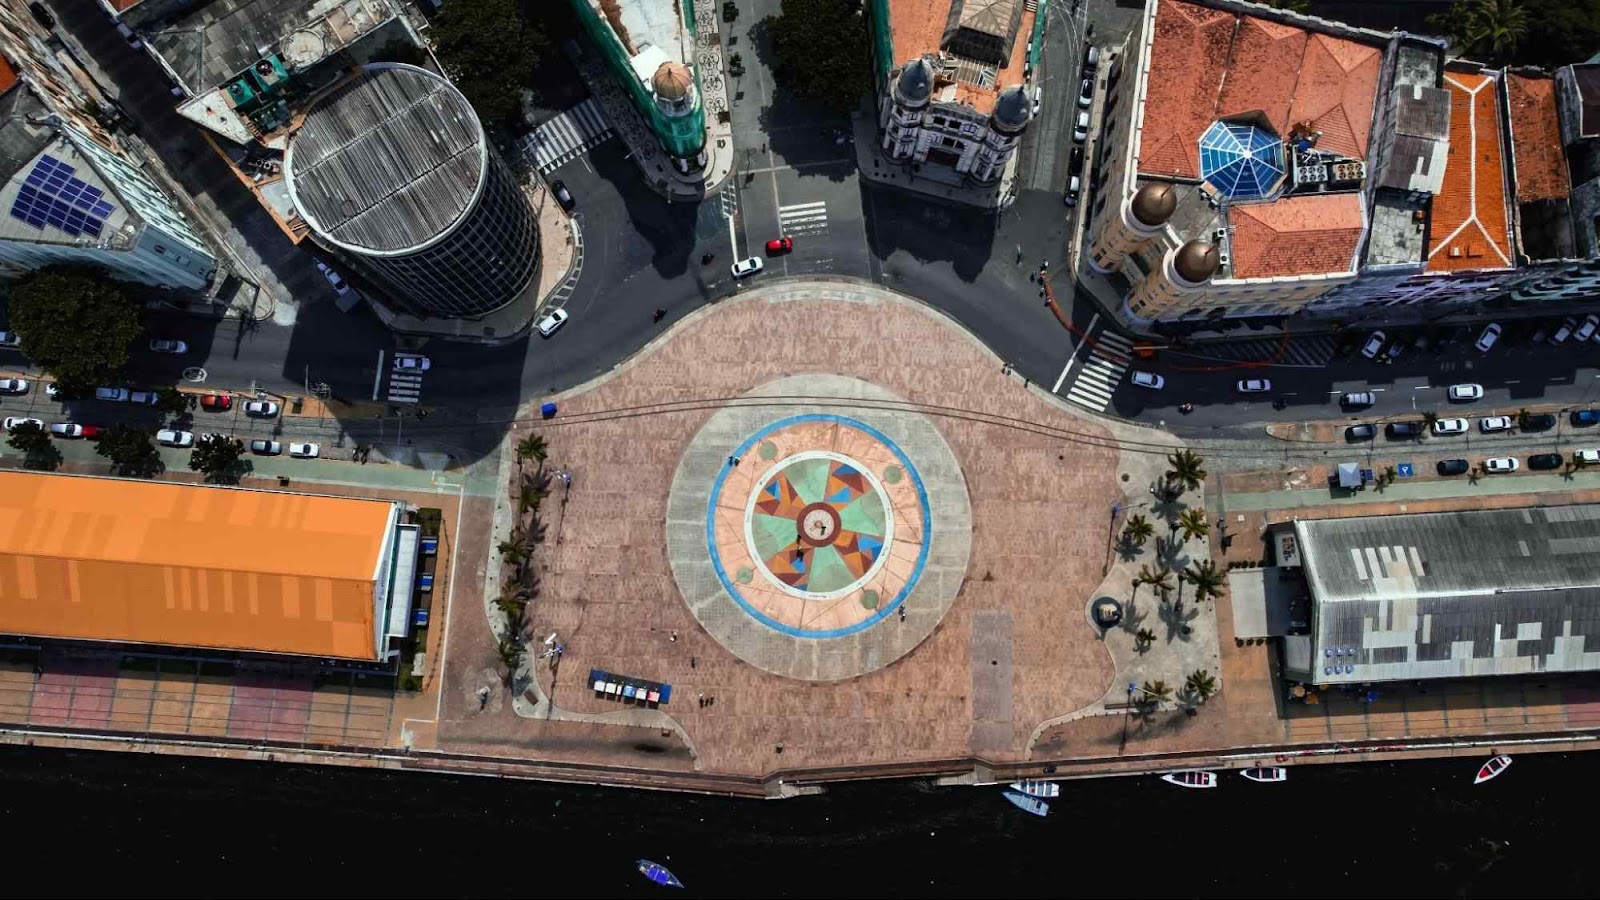 Vista aérea do Marco Zero, na Praça Rio Branco, Recife Antigo. No centro da praça, está um mosaico circular colorido. Ao redor dela, aparece uma avenida que contorna o espaço e várias construções antigas.